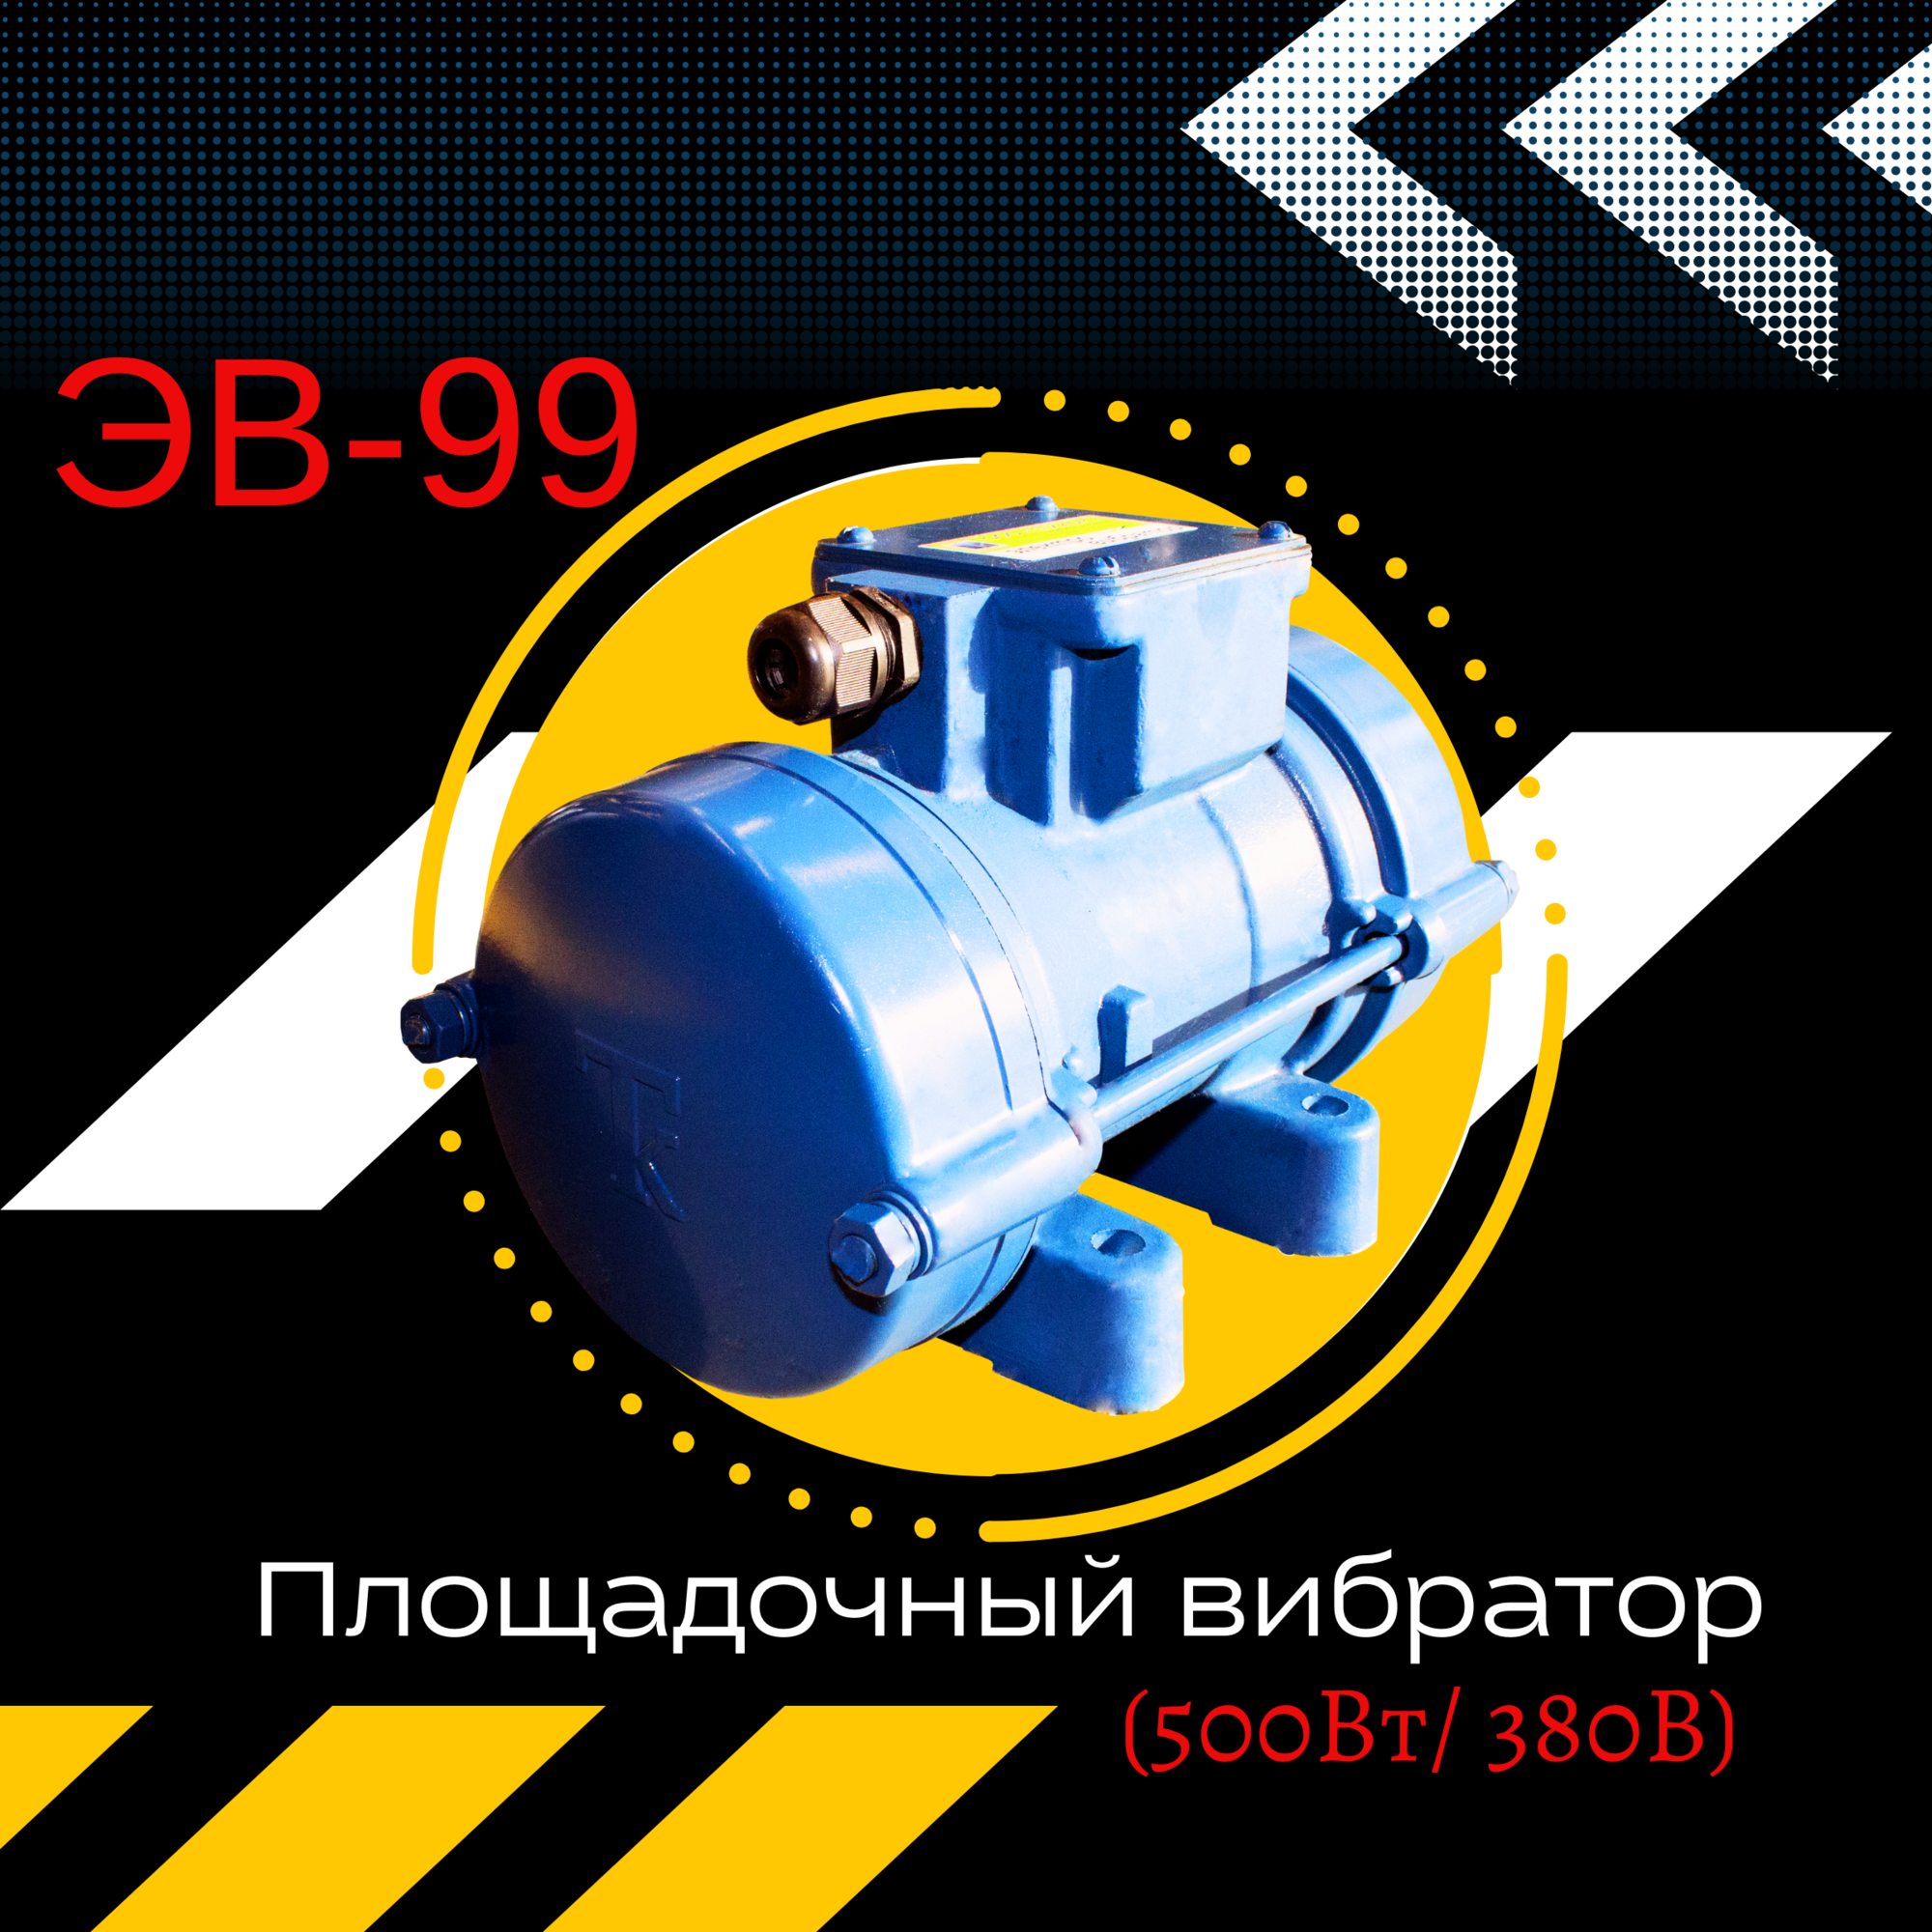 Площадочный вибратор ЭВ-99 (500 Вт/ 380 В)